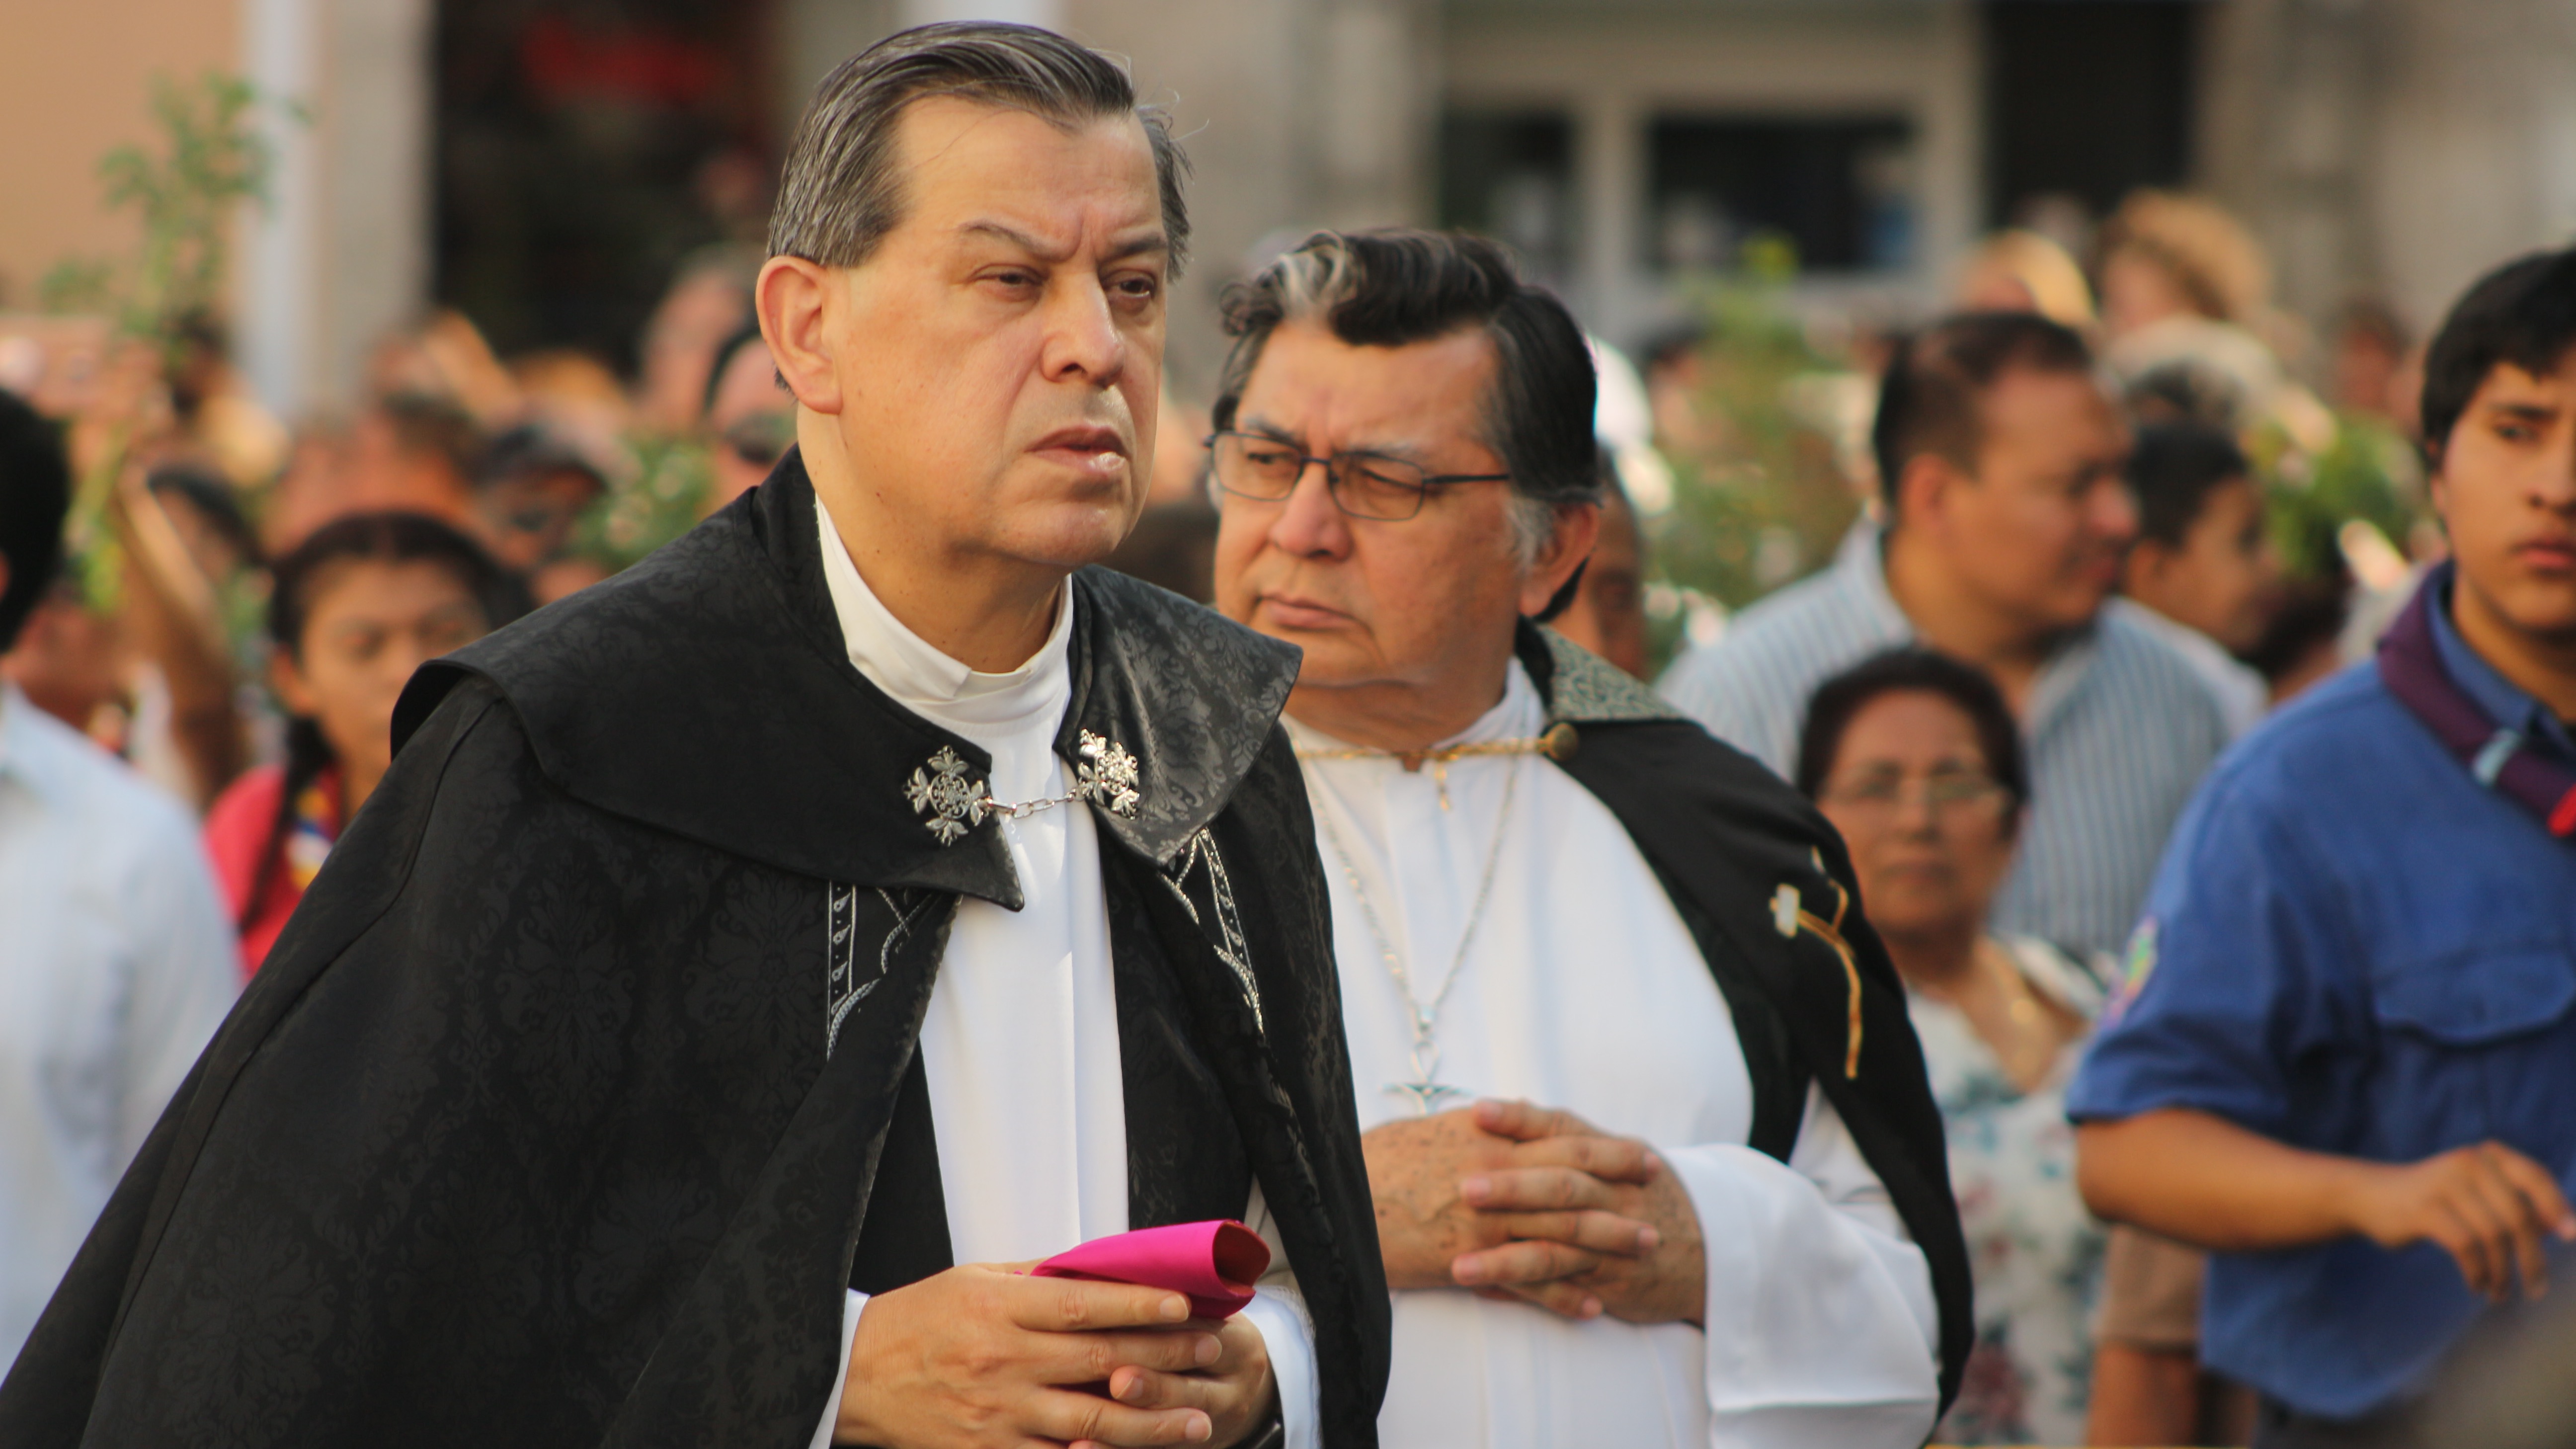 El arzobispo de Yucatán presidió los eventos.